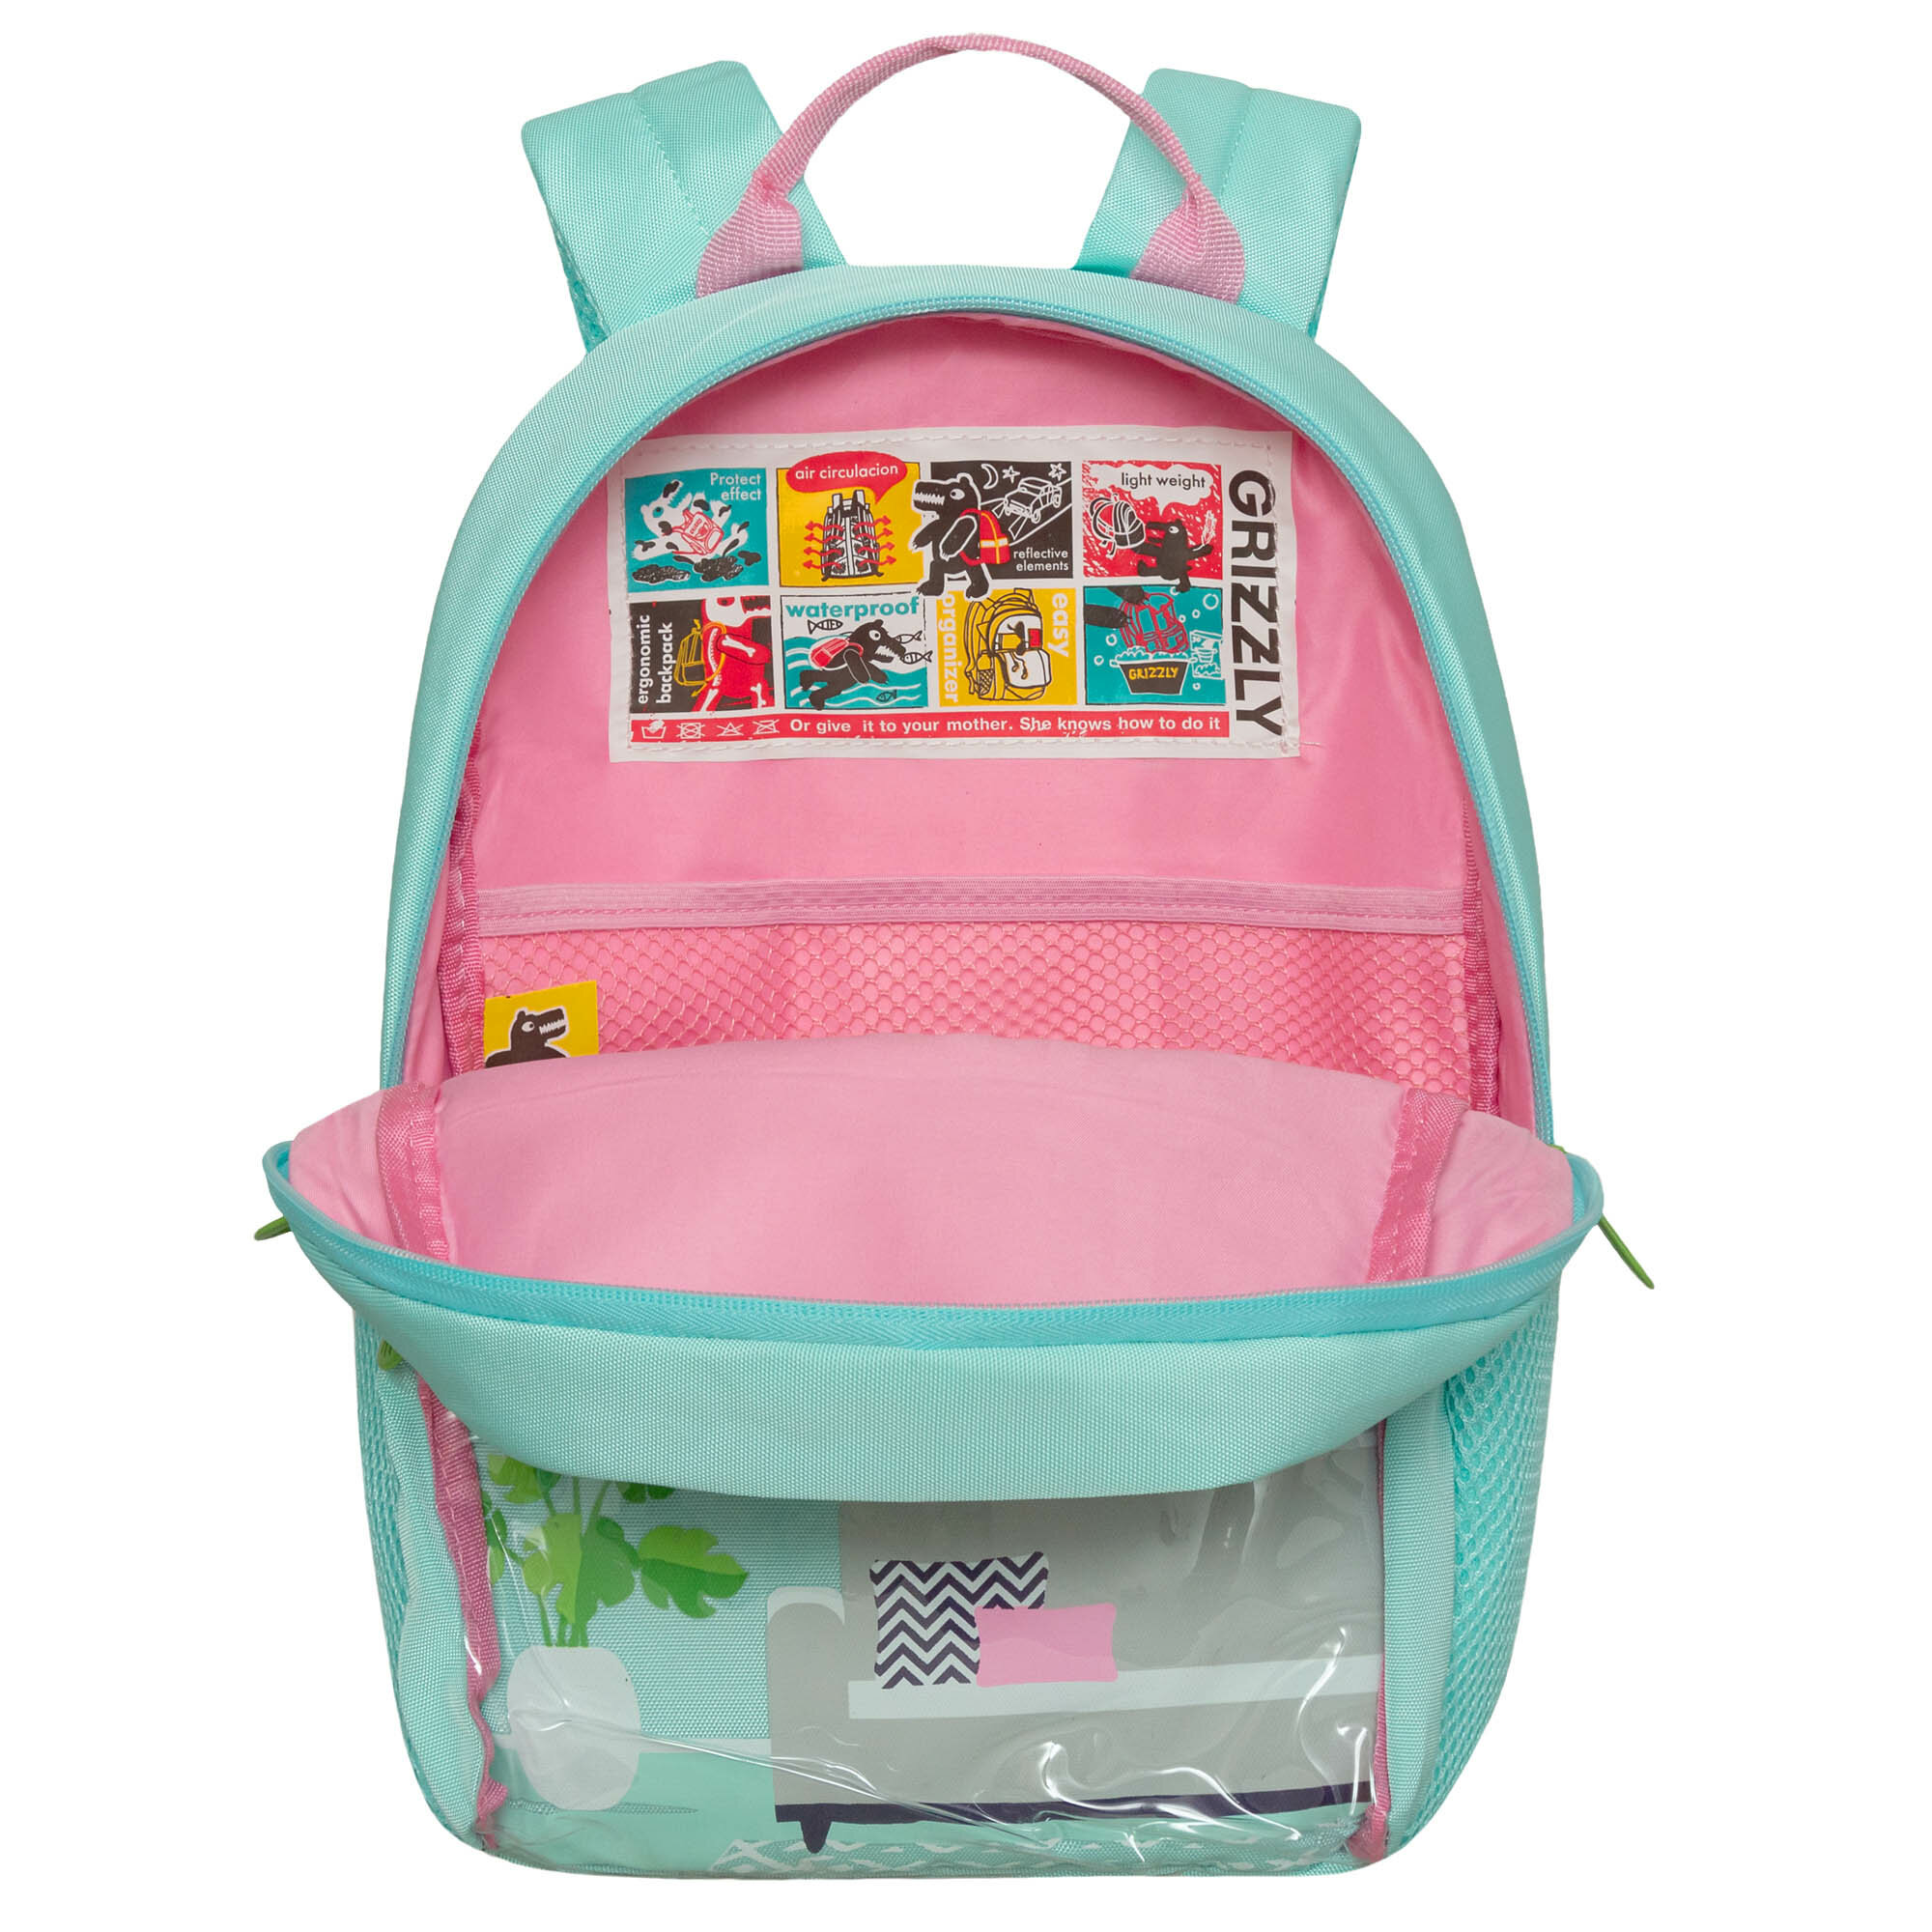 Рюкзак для внешкольных занятий GRIZZLY с карманом для ноутбука 13", одним отделением, для девочки RO-370-1/2